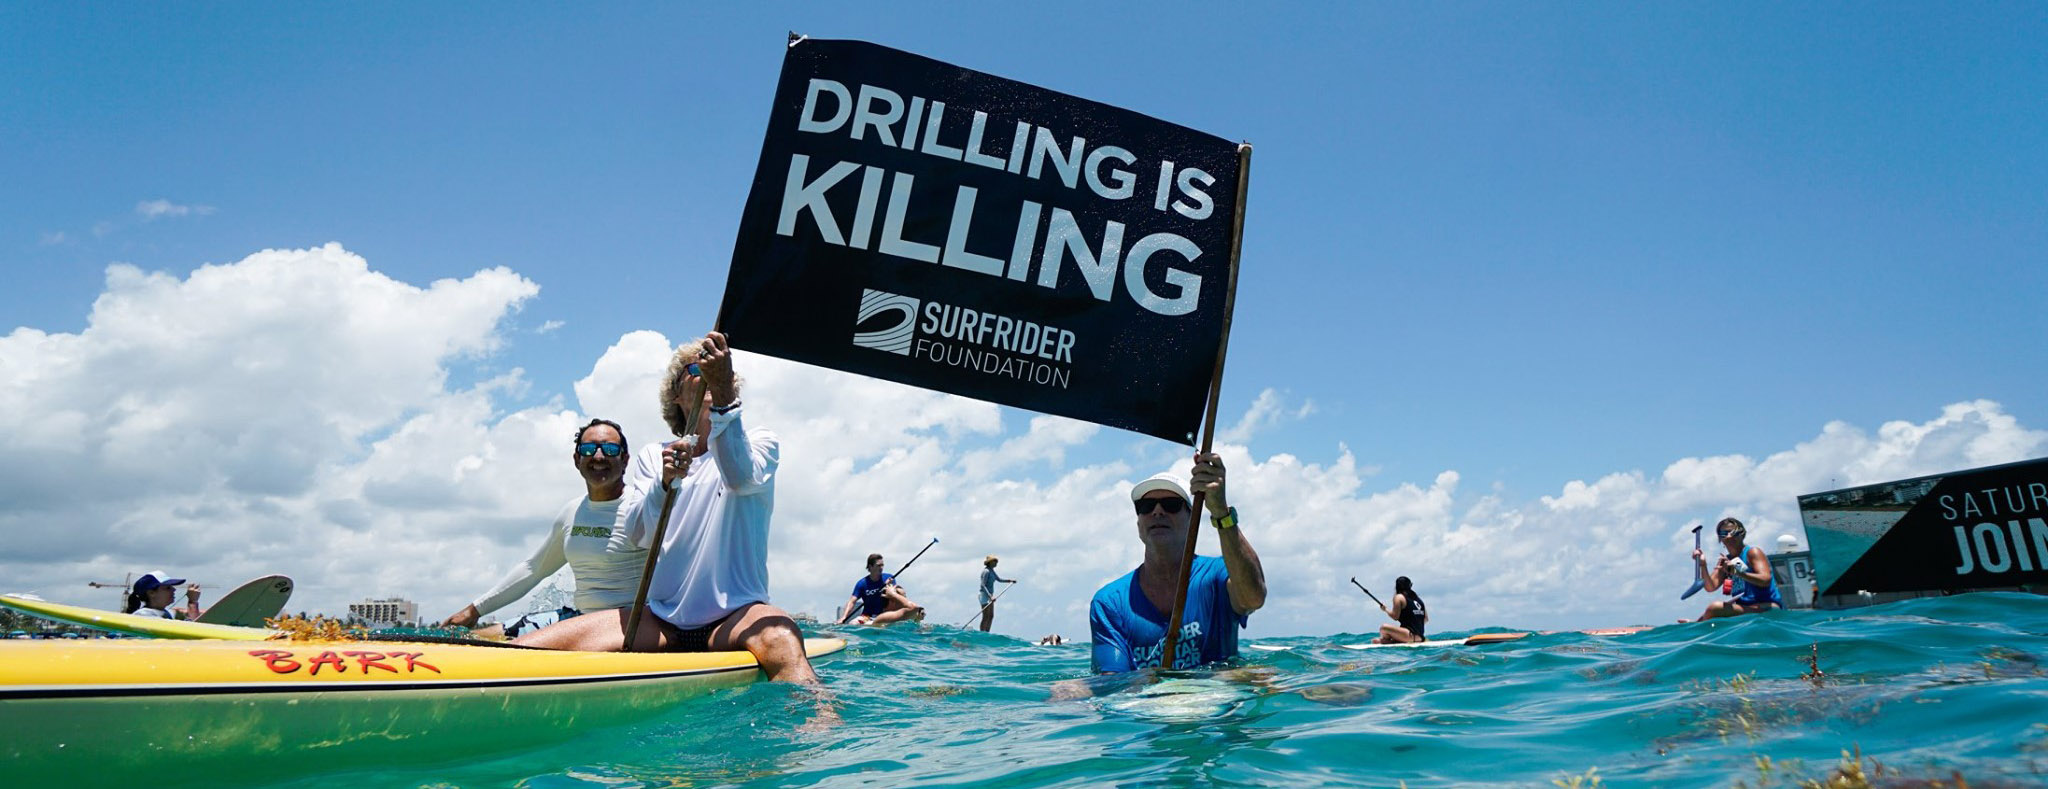 SRF_drilling_is_killing